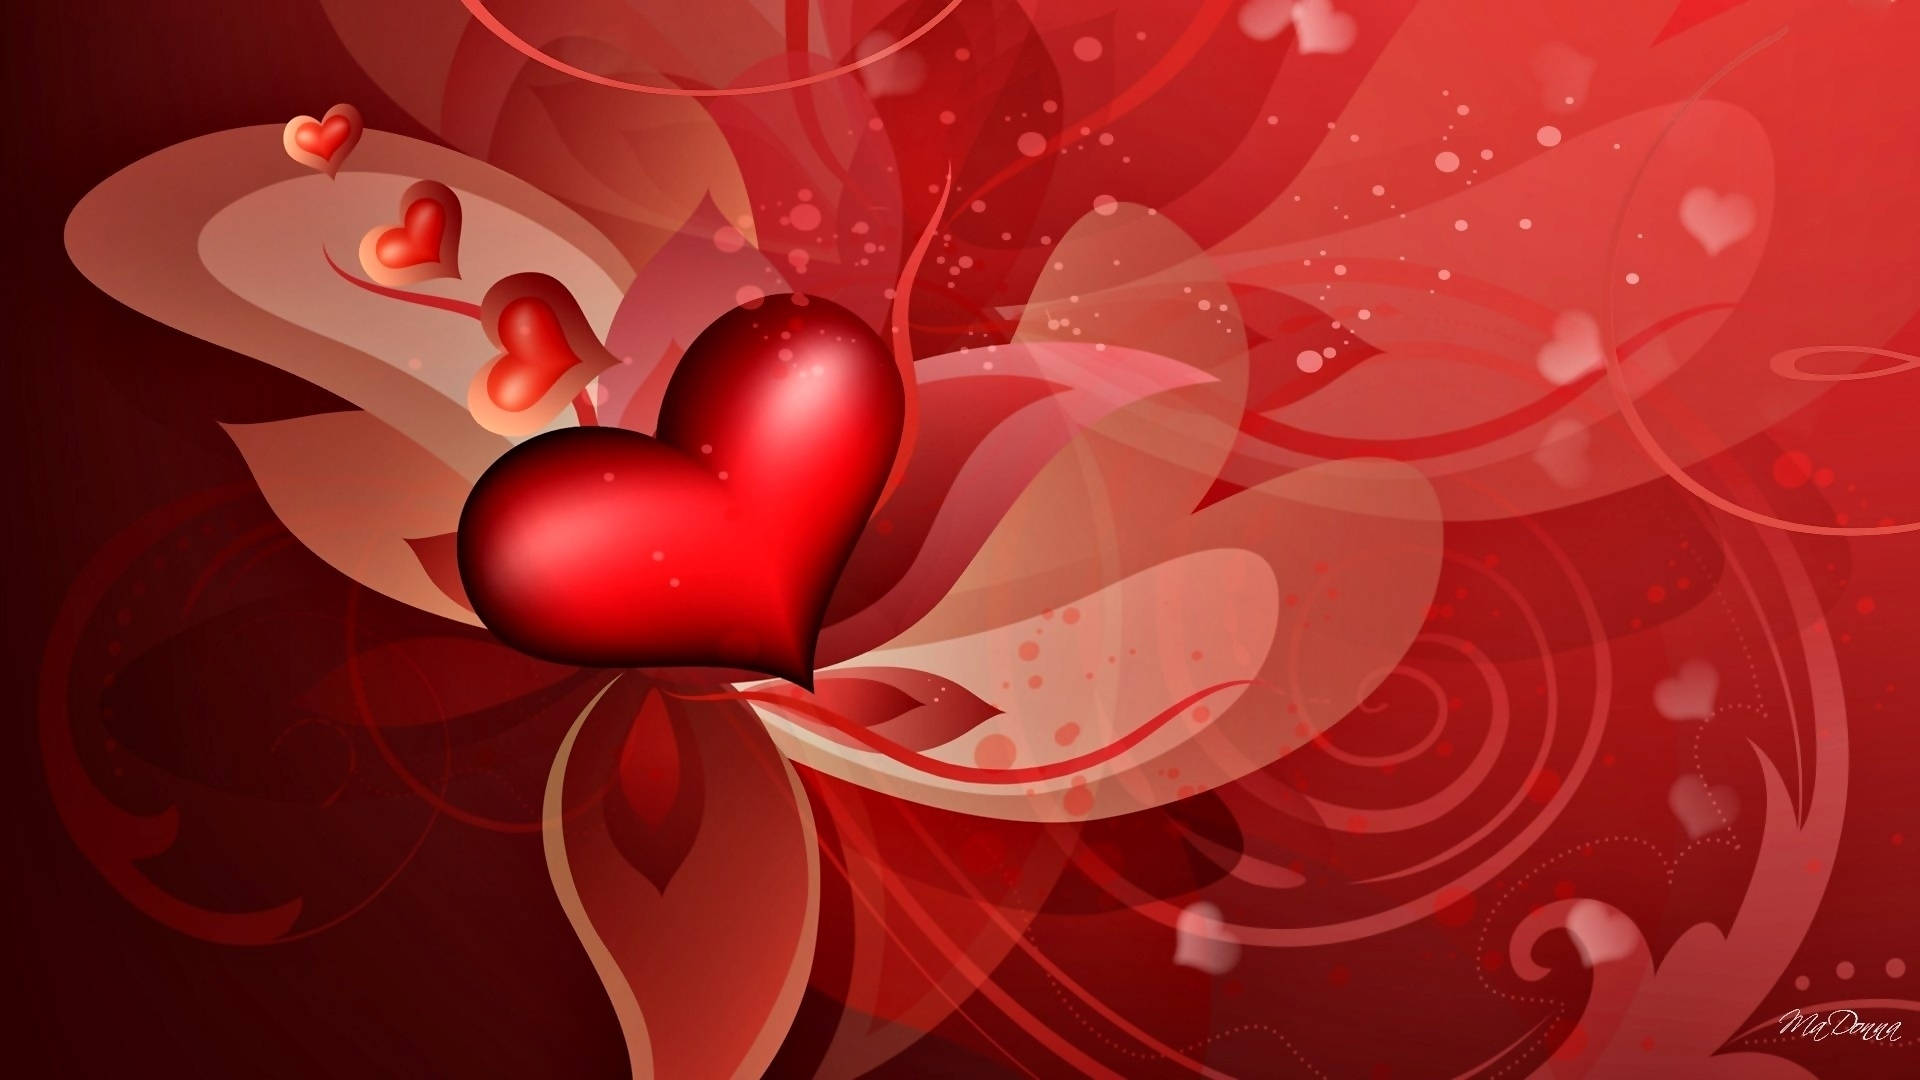 Cute Love Heart Graphic Design Wallpaper